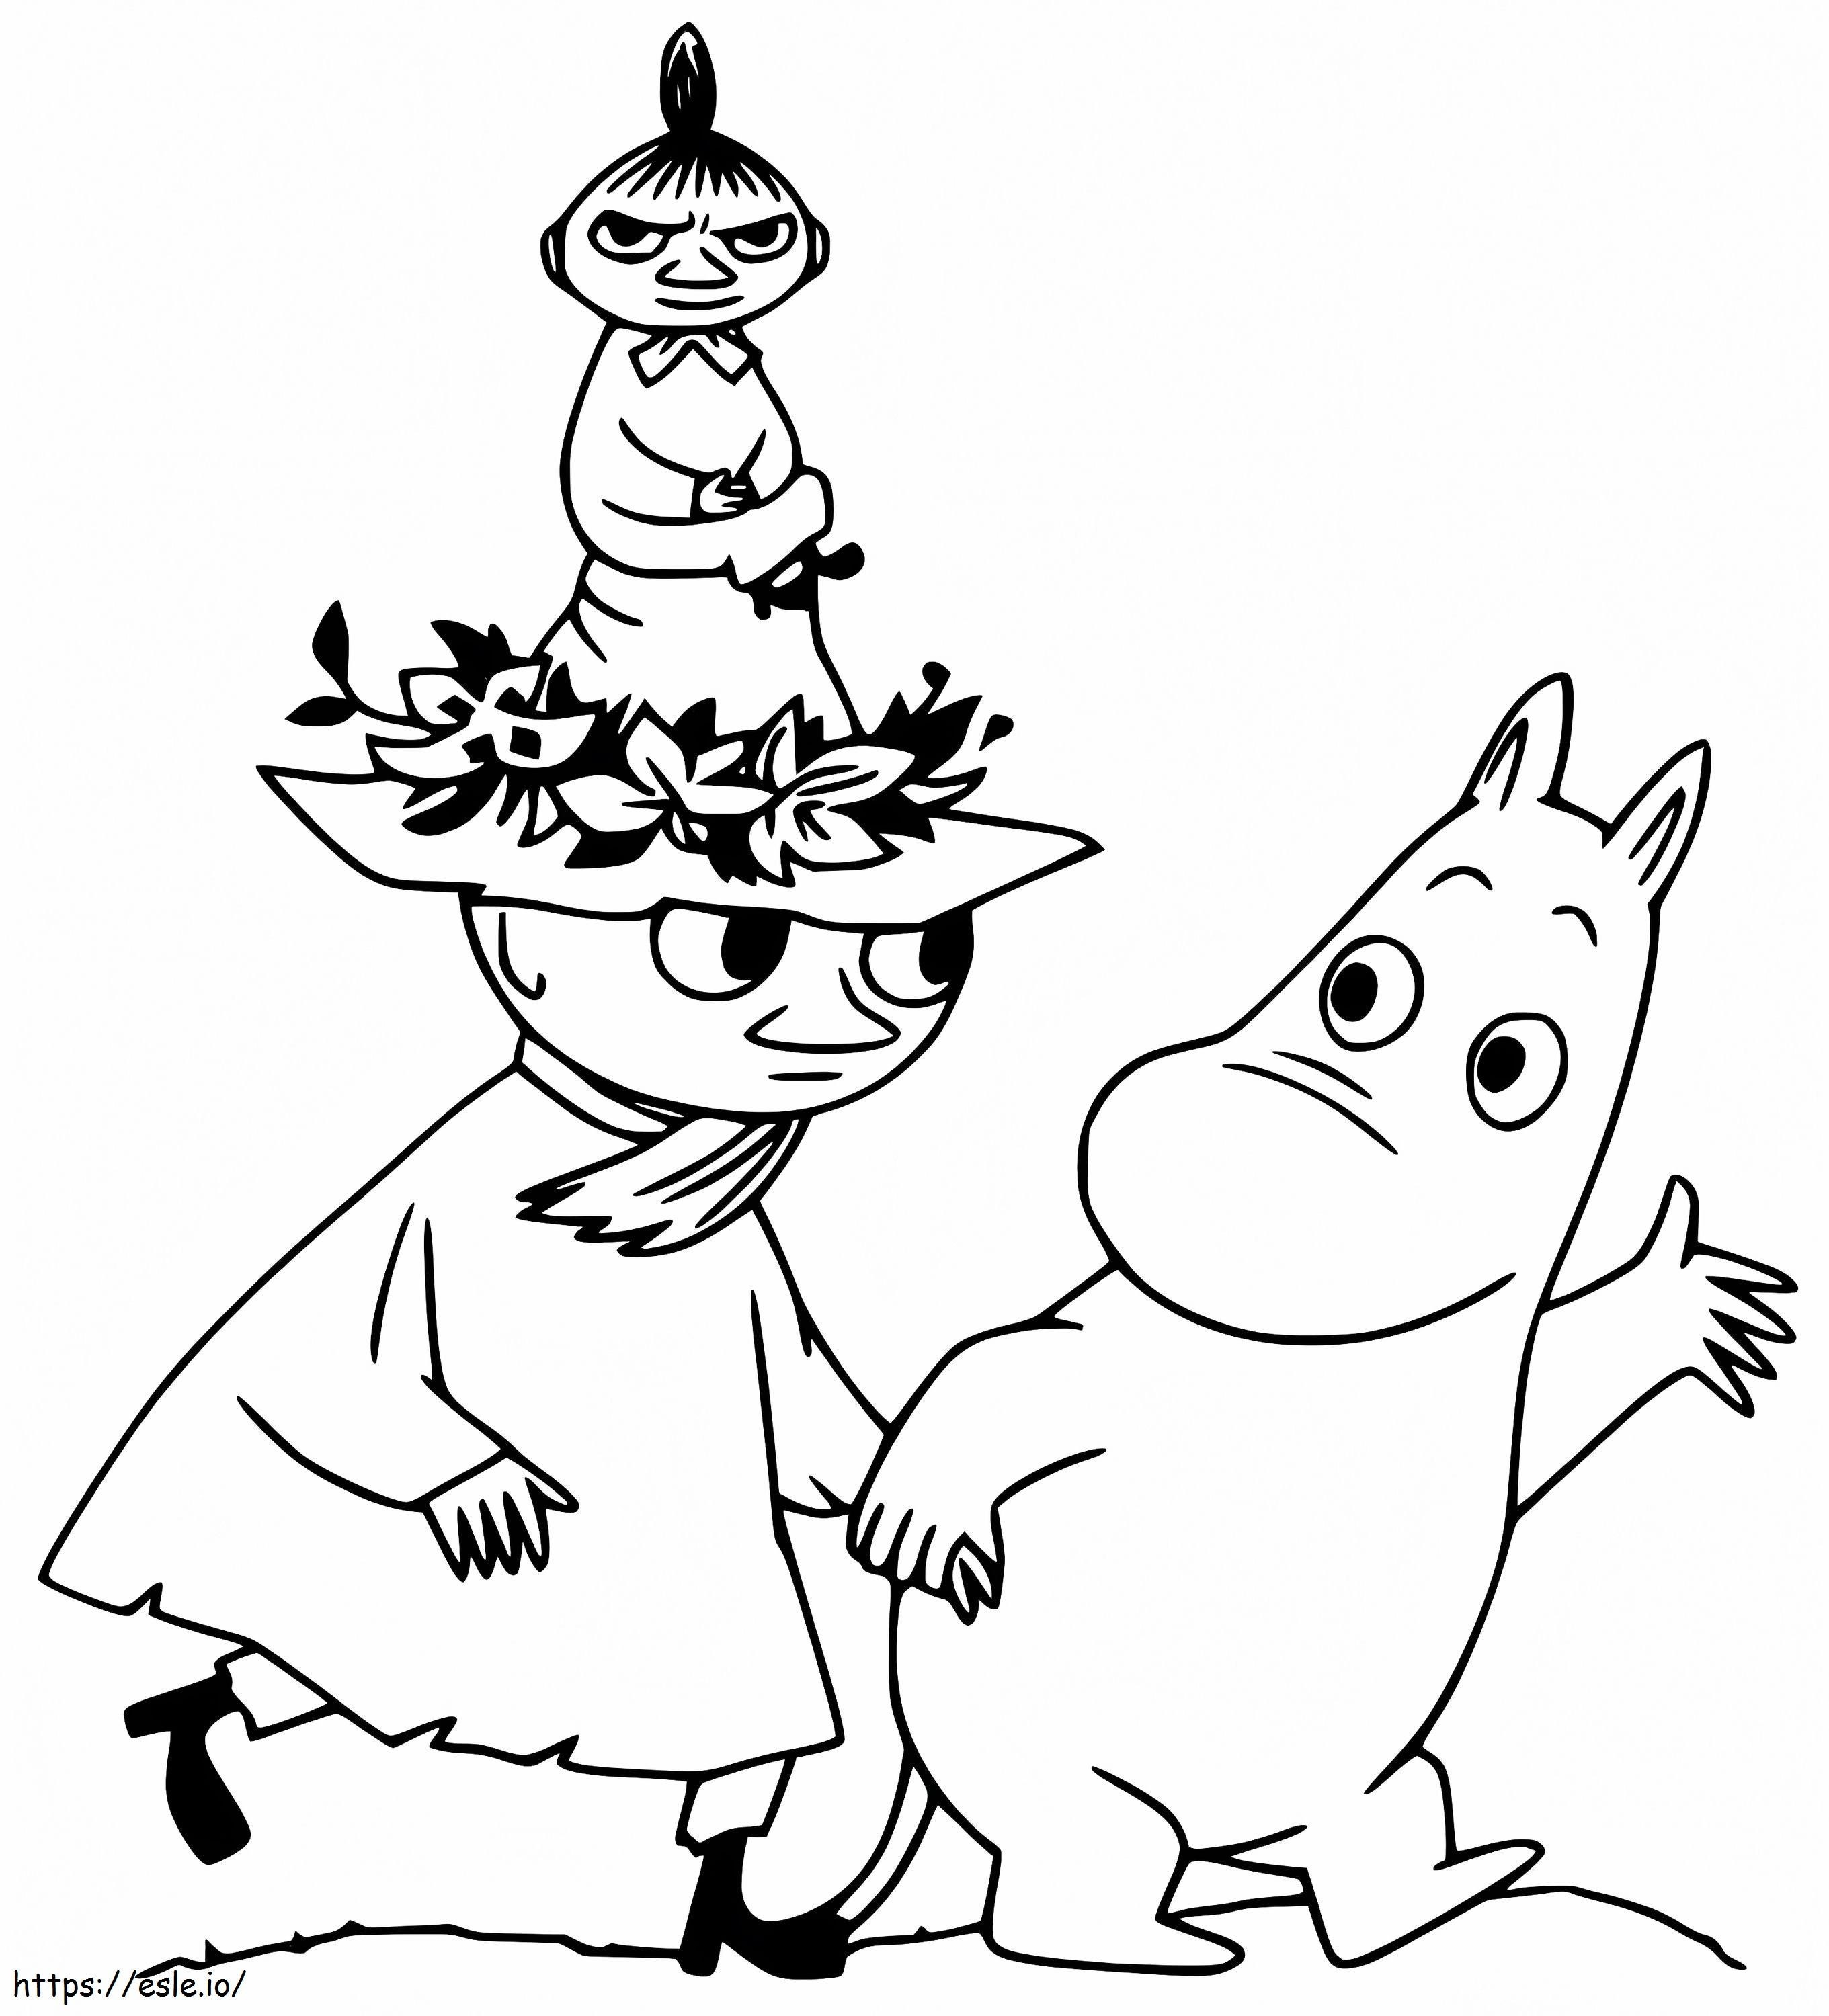 Moomintroll cu Snufkin de colorat